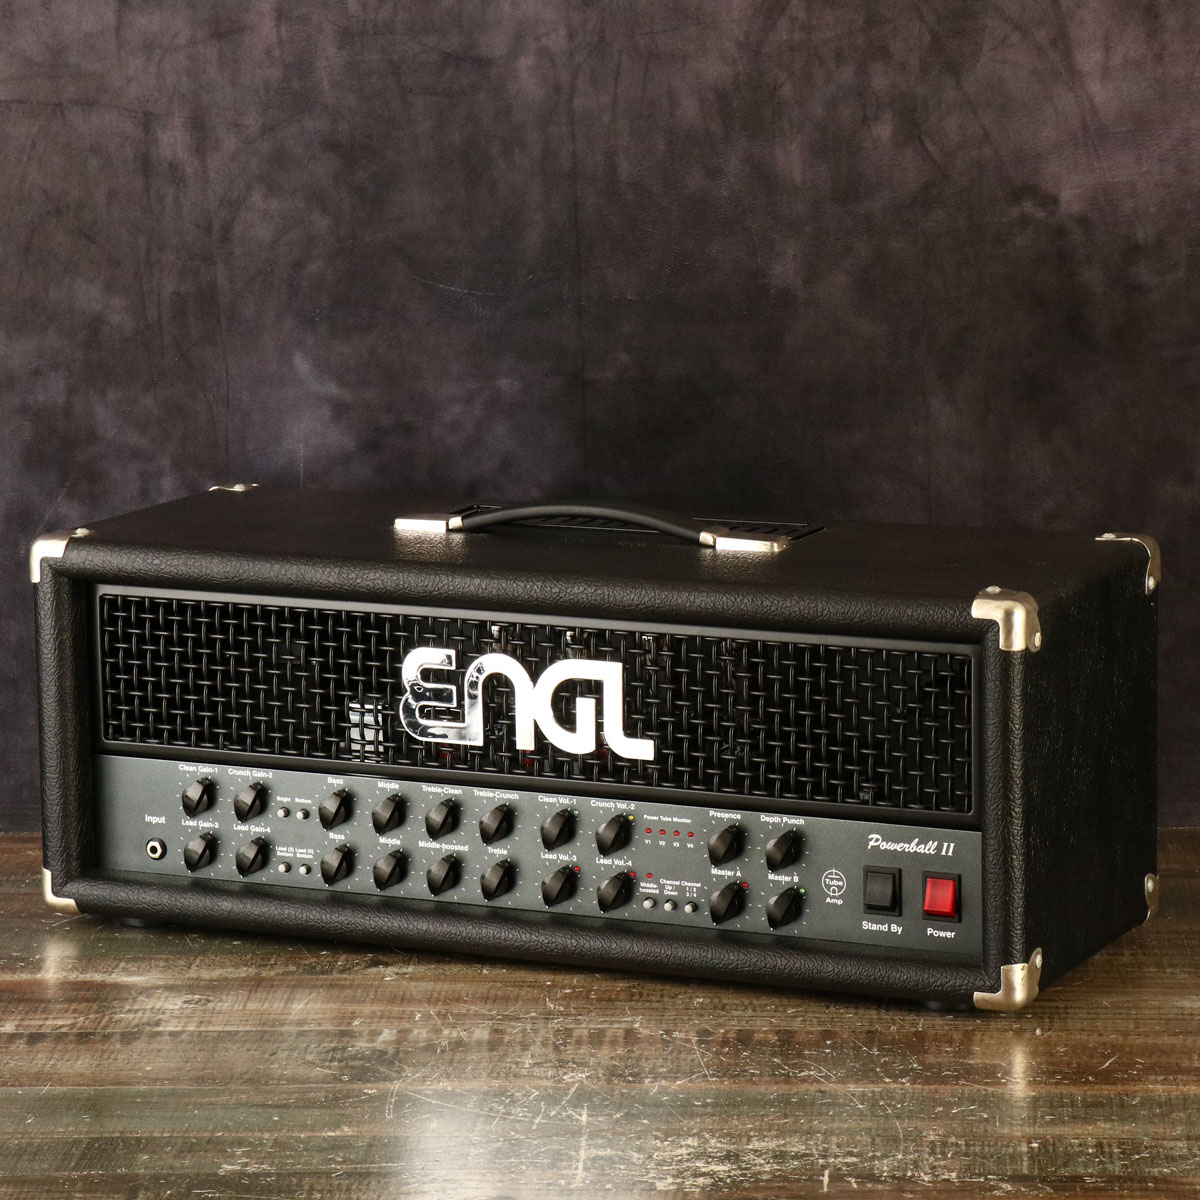 ENGL POWER BALL II (E645II) 通販